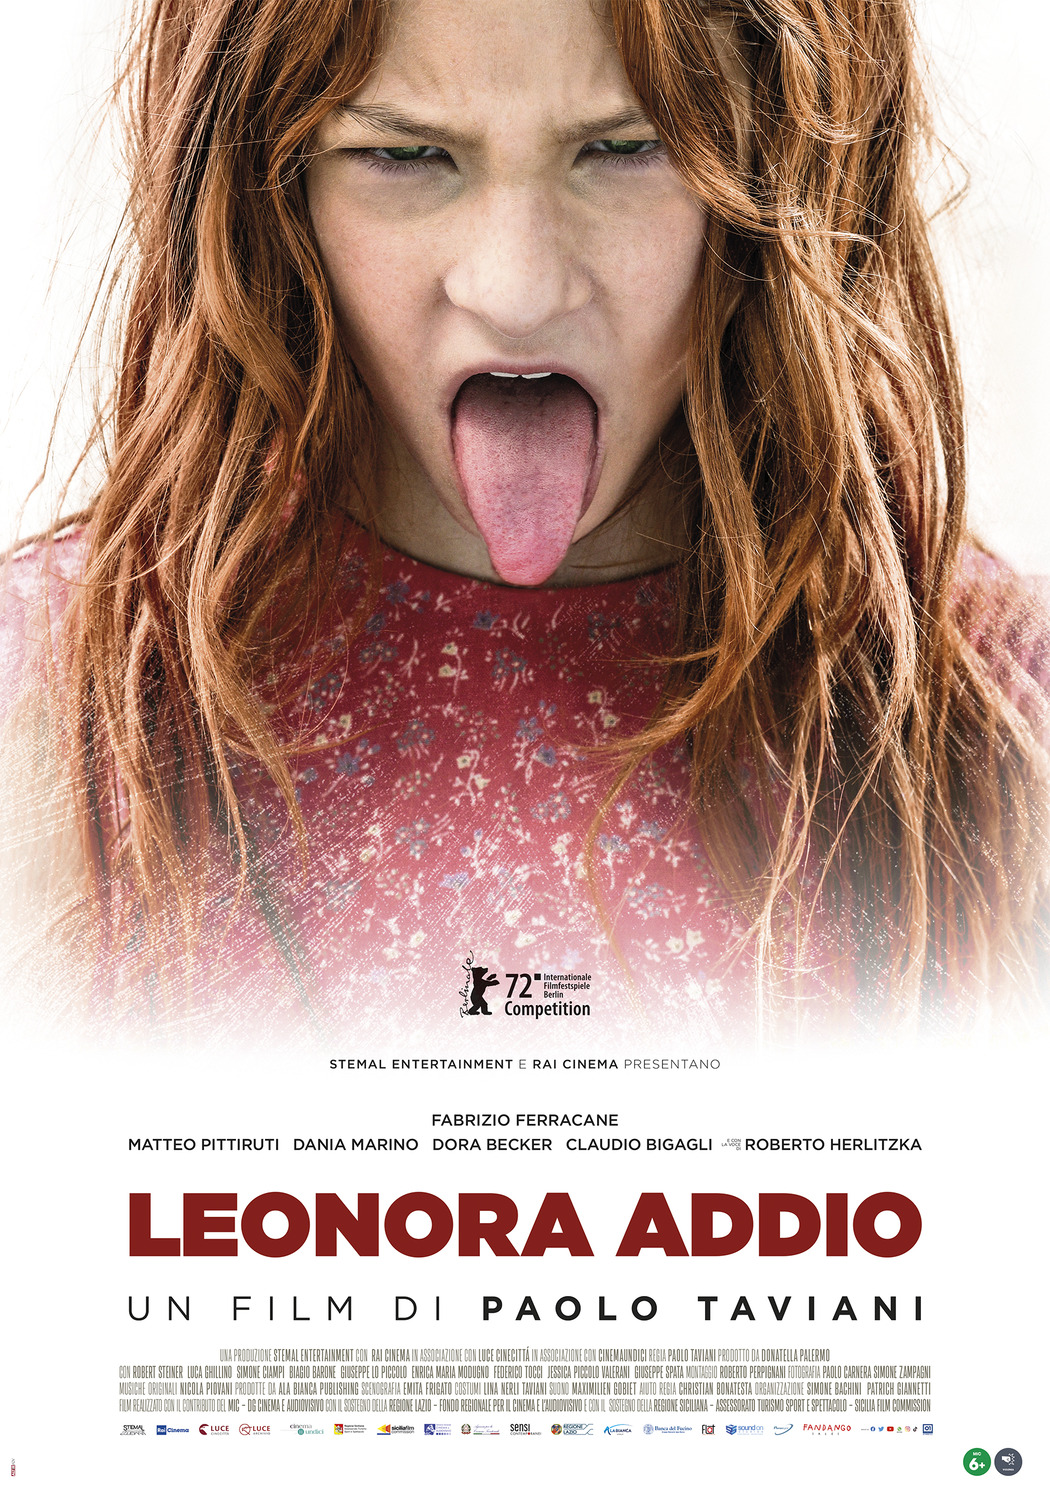 Leonora addio : Extra Large Movie Poster Image - IMP Awards